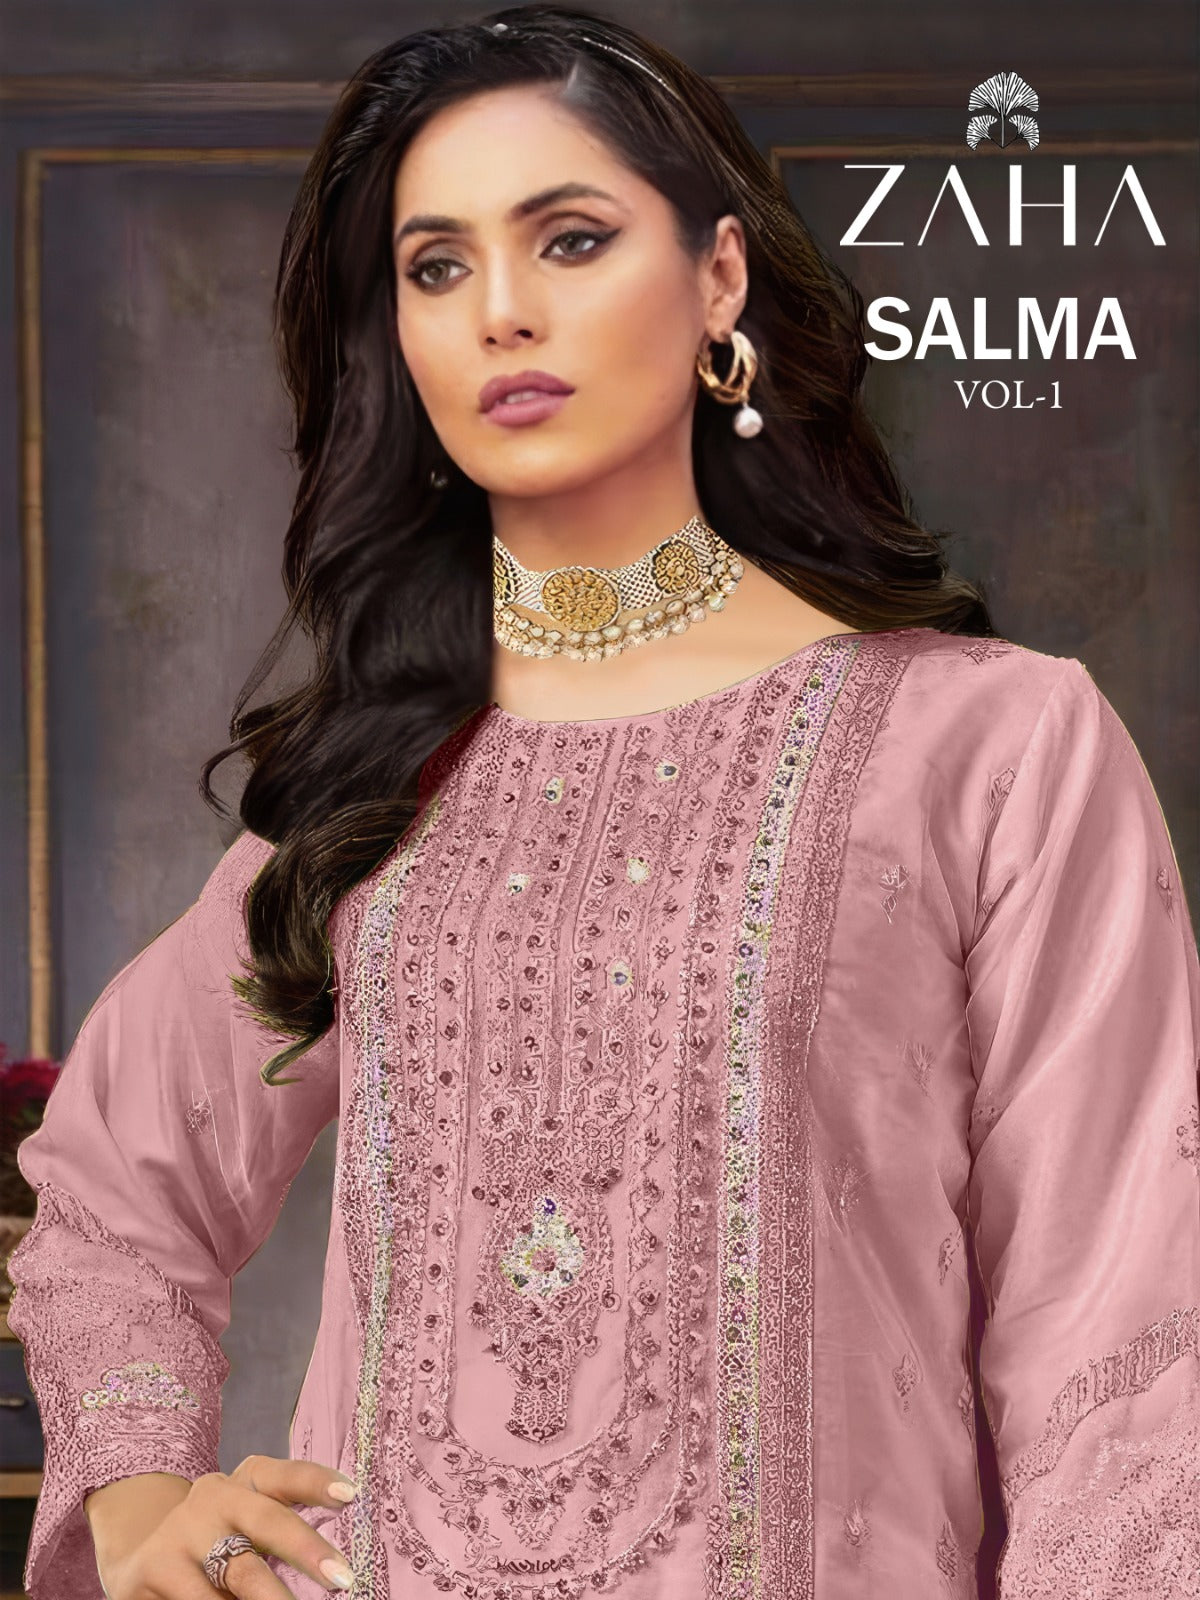 Salma Vol 1 Zaha Organza Pakistani Salwar Suits